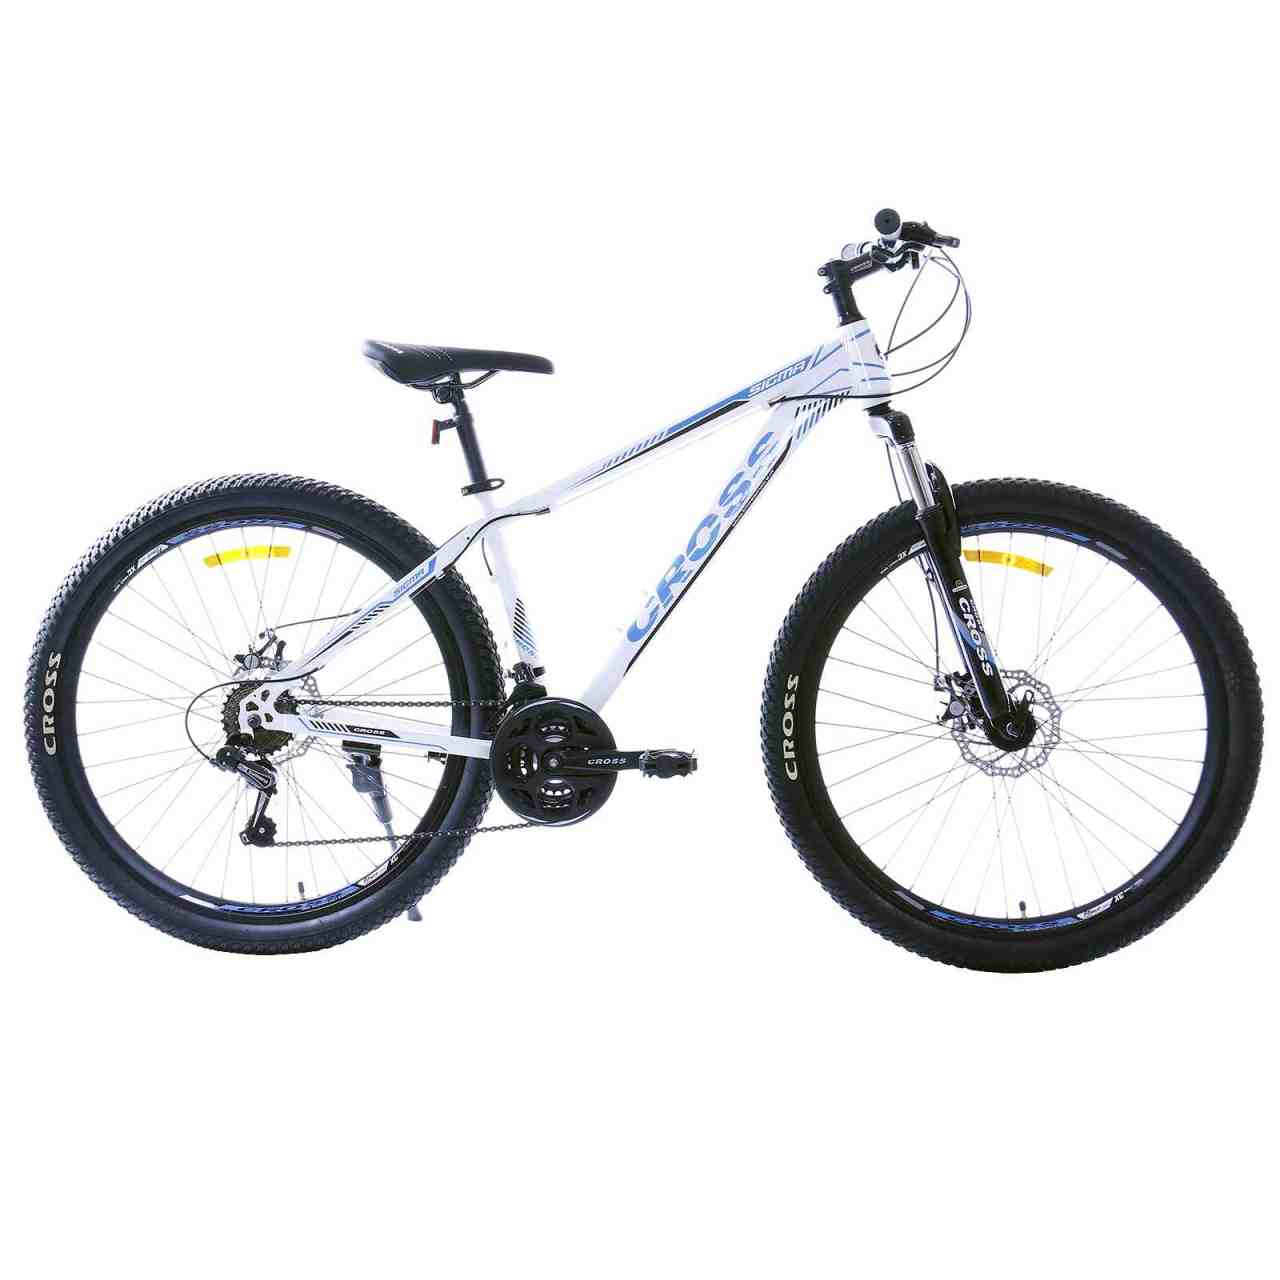 دوچرخه کوهستان-Mountain bicycle برند نامشخص-- دوچرخه کوهستان کراس مدل Sigma سایز 27.5